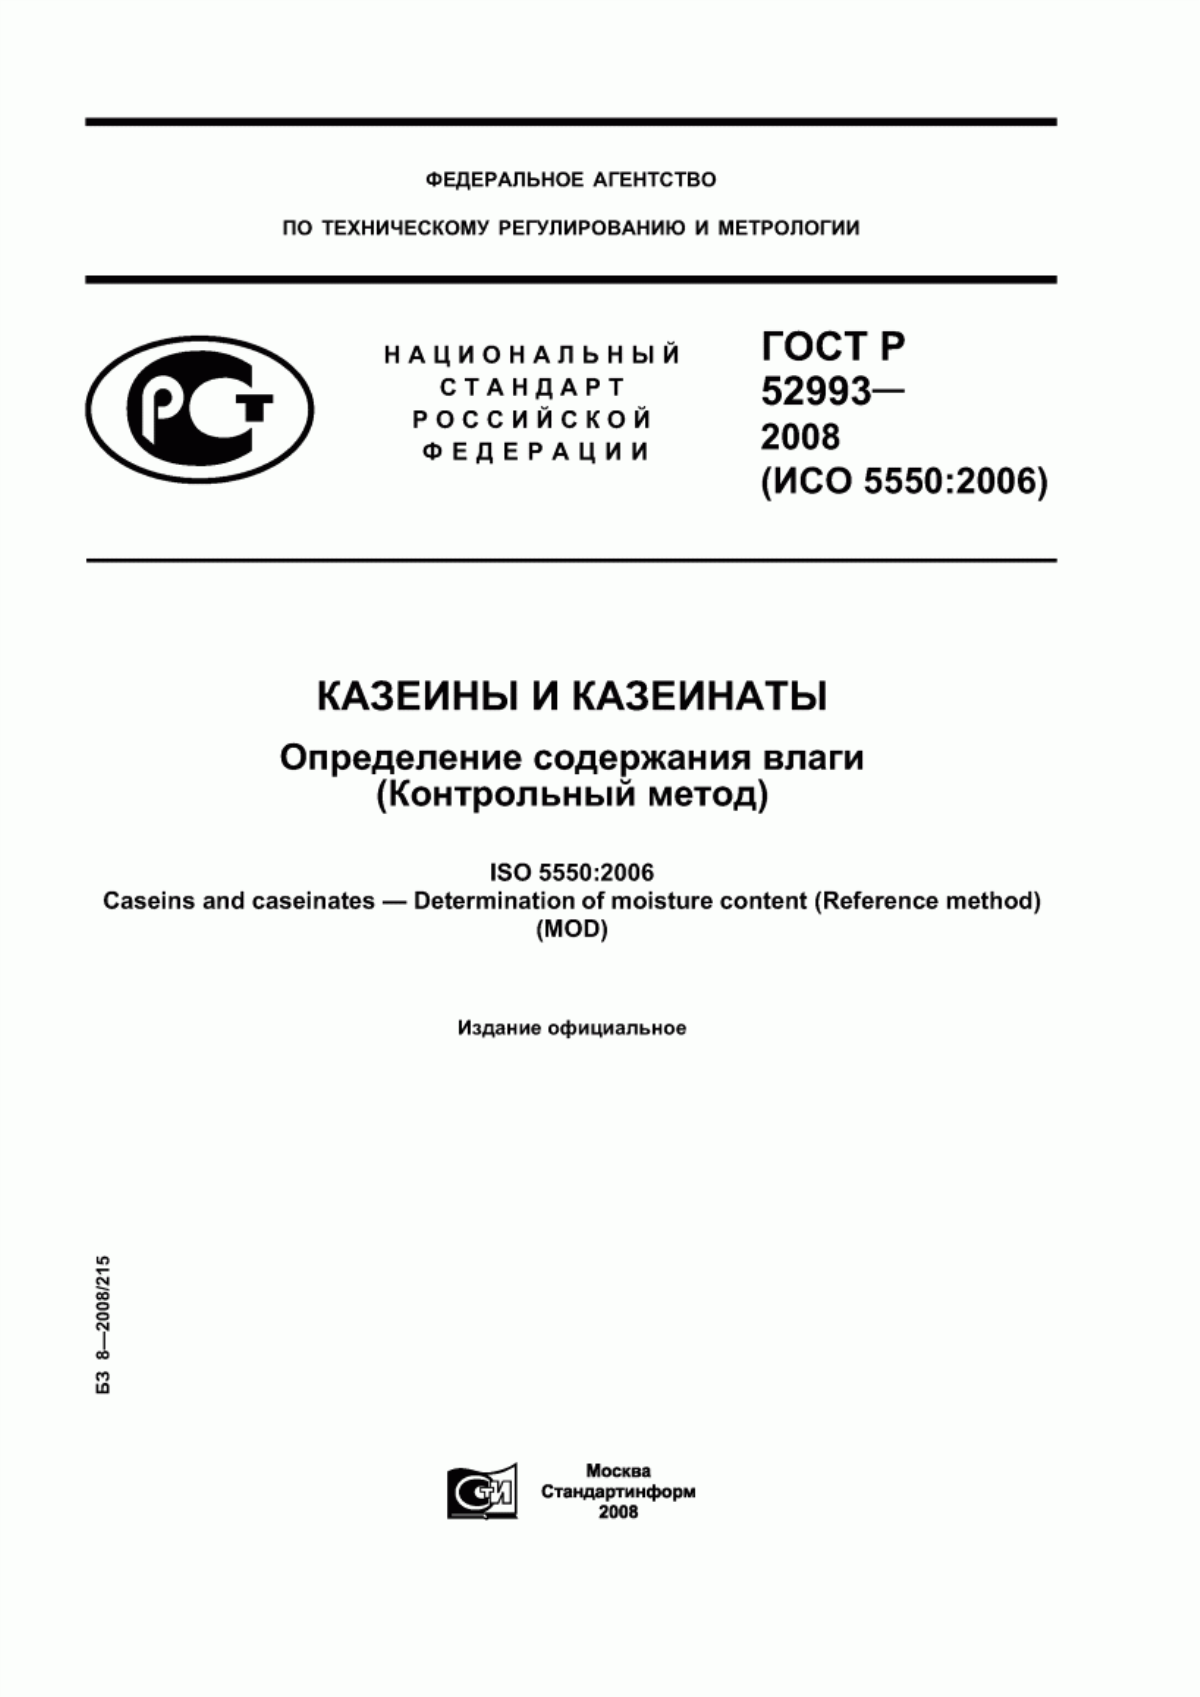 ГОСТ Р 52993-2008 Казеины и казеинаты. Определение содержания влаги (Контрольный метод)